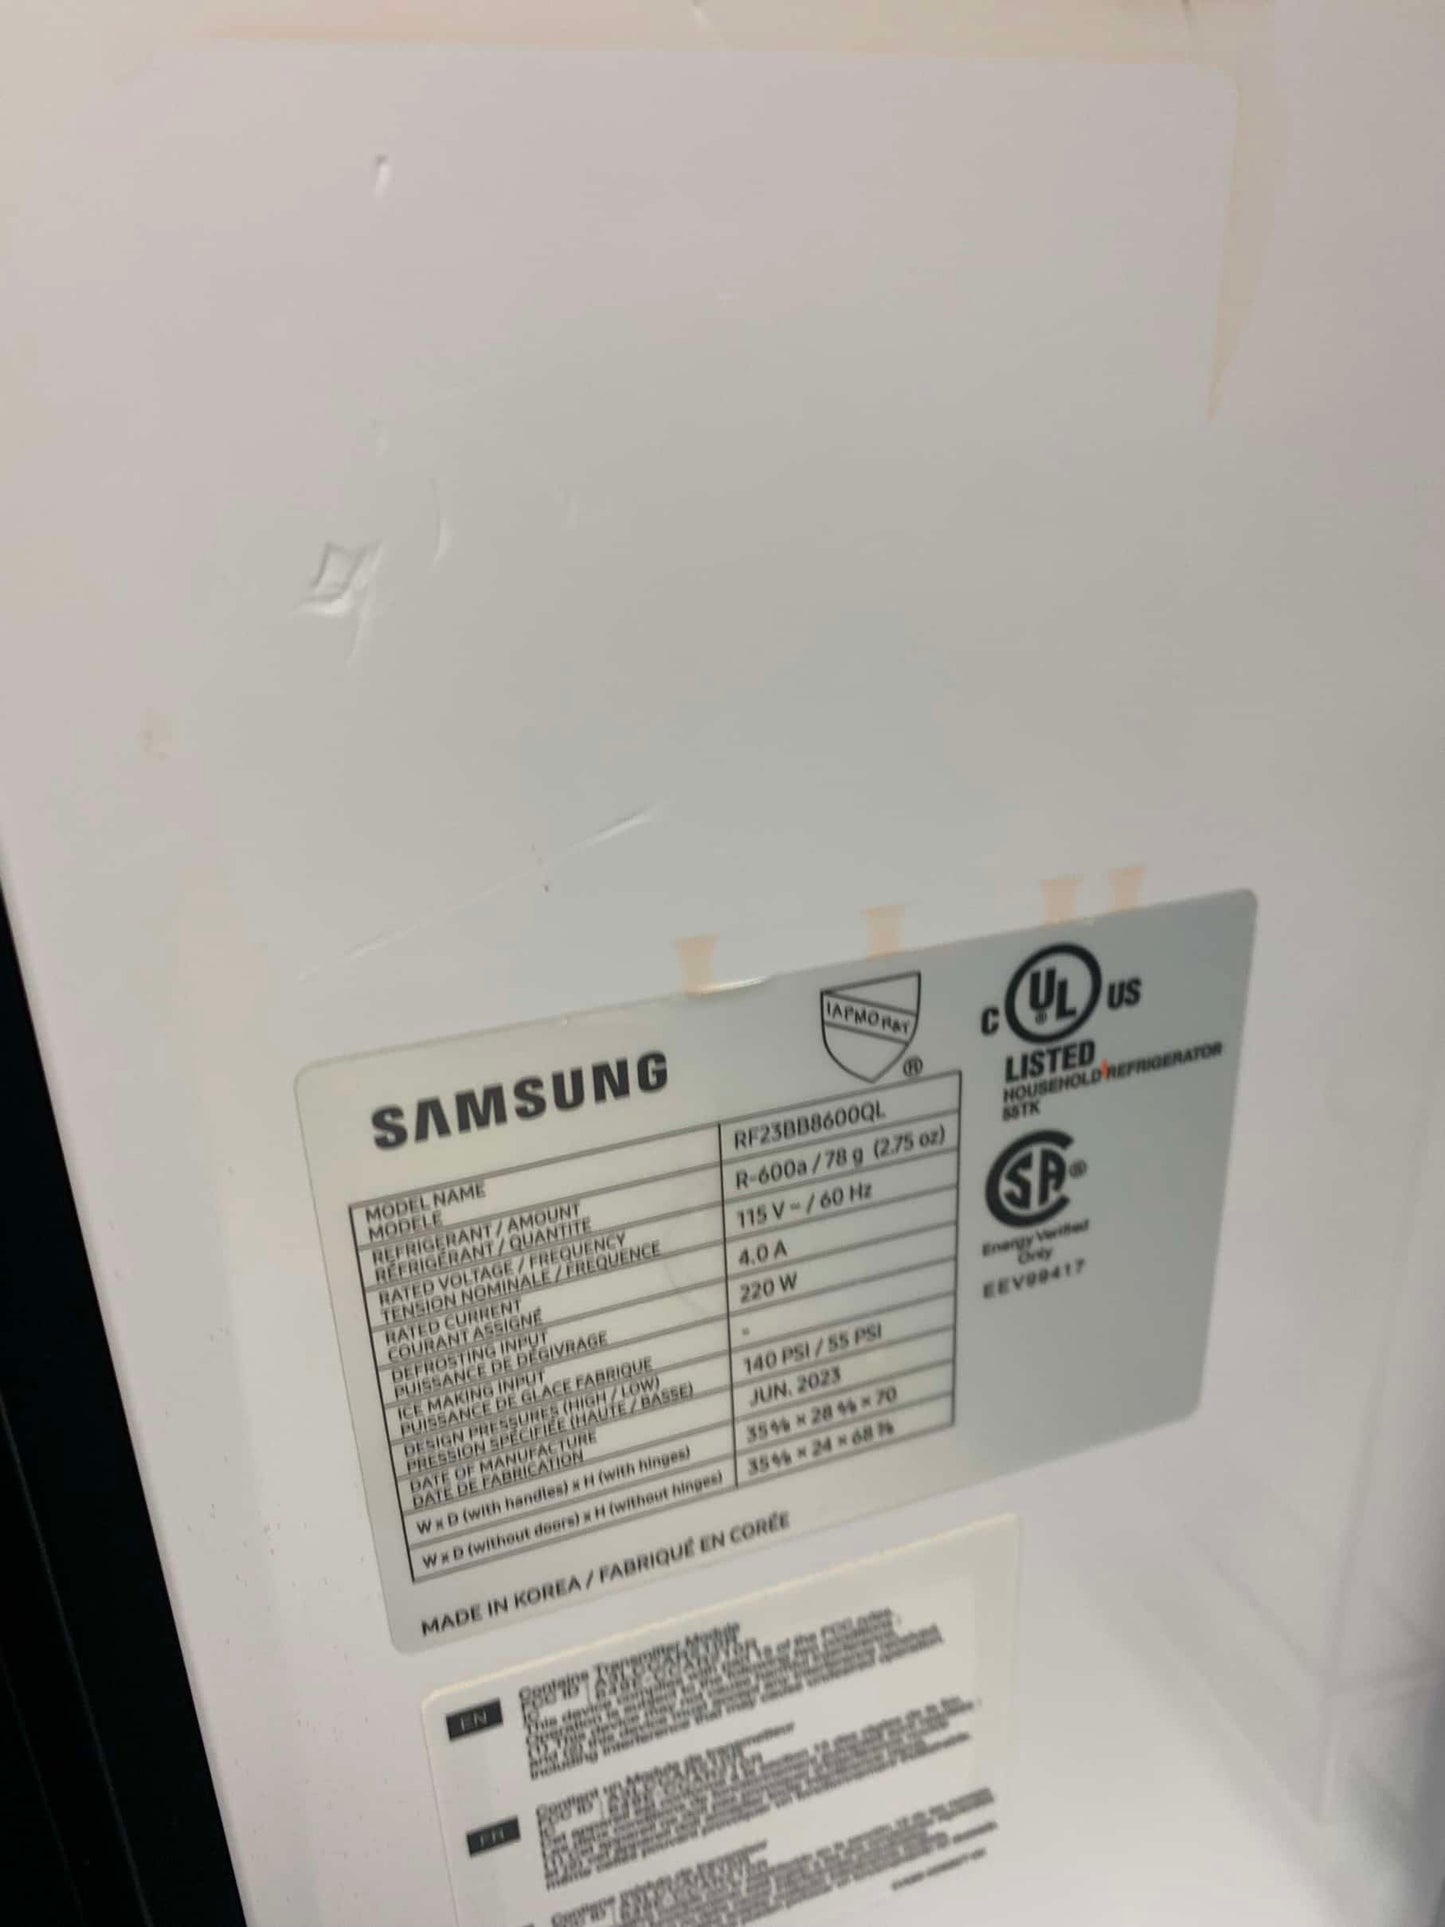 ★ Samsung Open Box  Bespoke 23 cu. ft. 4-Door French Door Smart Refrigerator with Beverage Center in Stainless Steel, Counter Depth RF4461